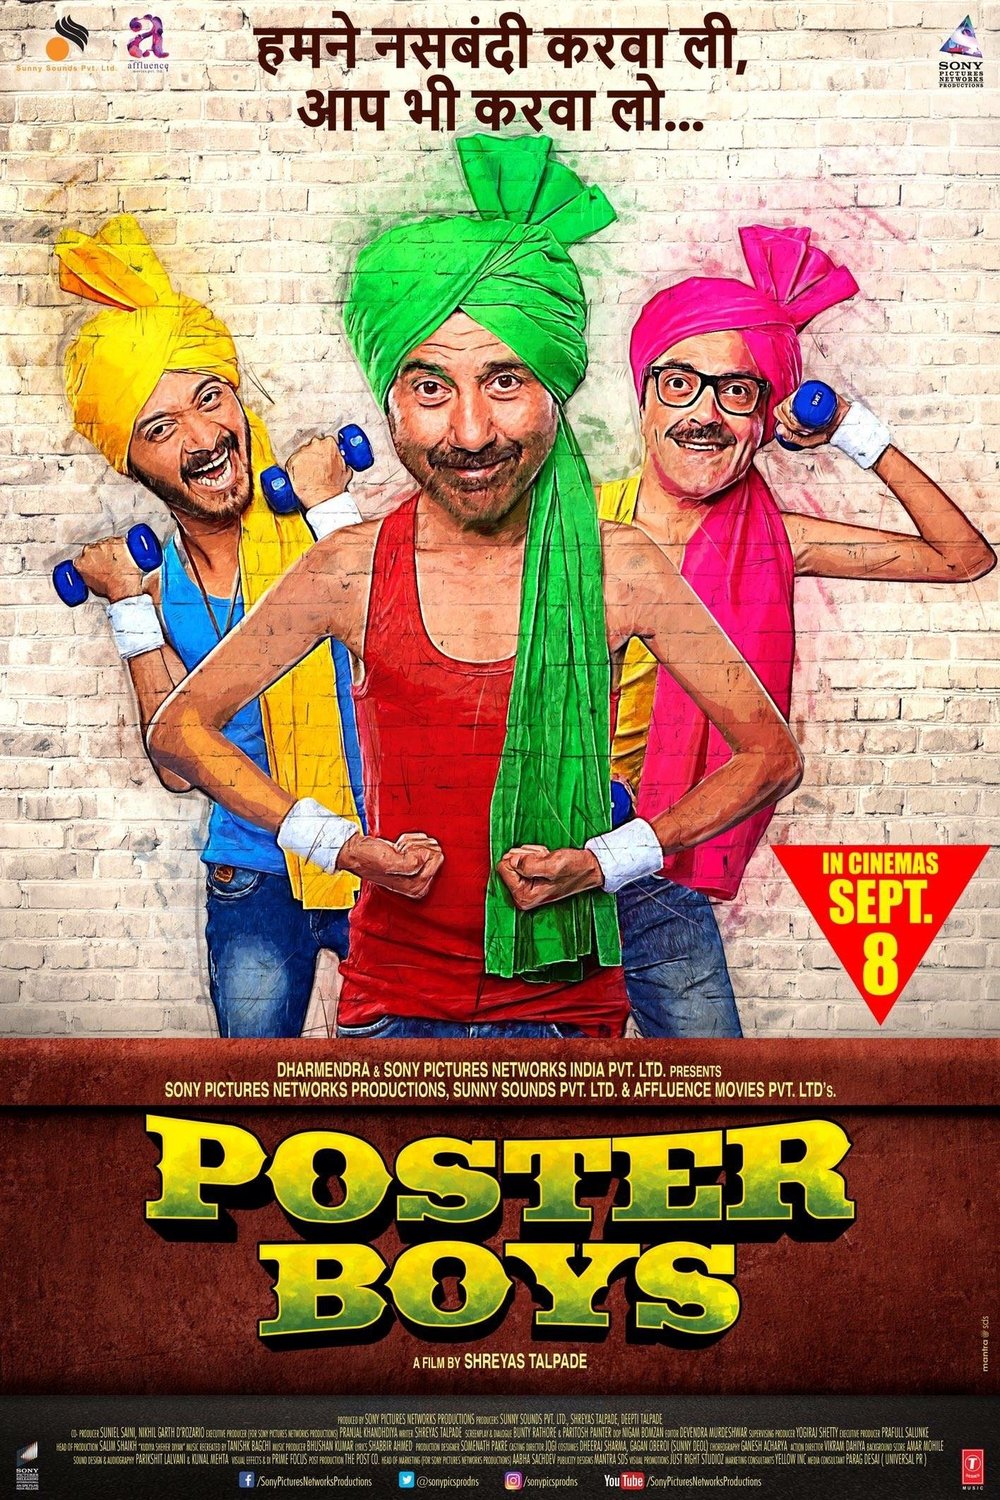 L'affiche originale du film Poster Boys en Hindi